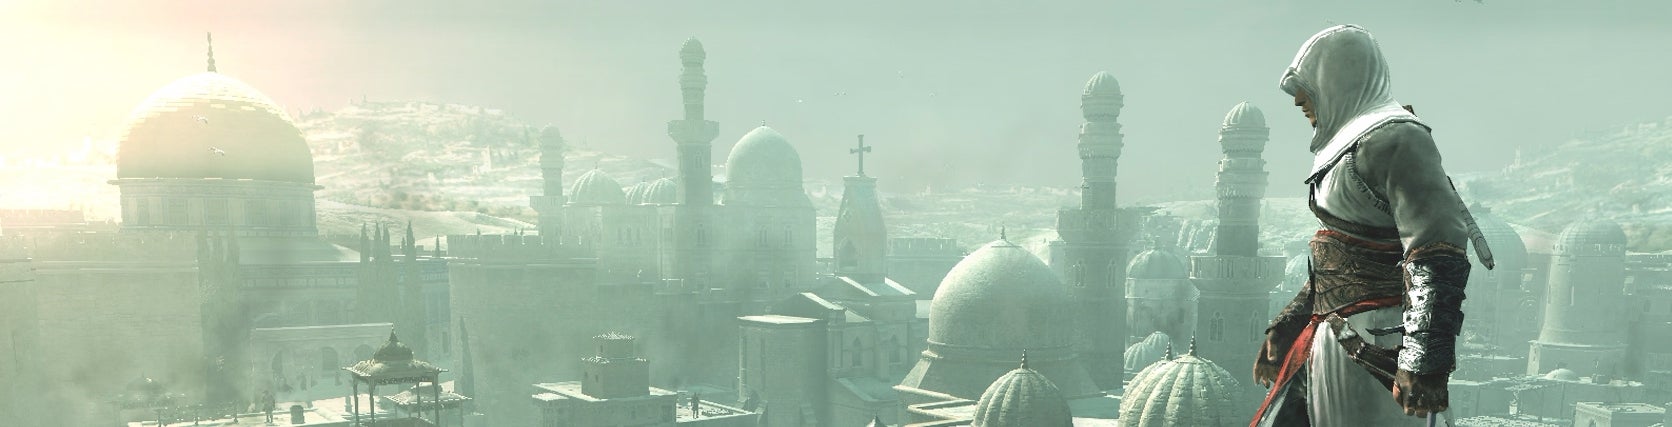 Imagen para Pequeños detalles: Assassin's Creed y la simulación